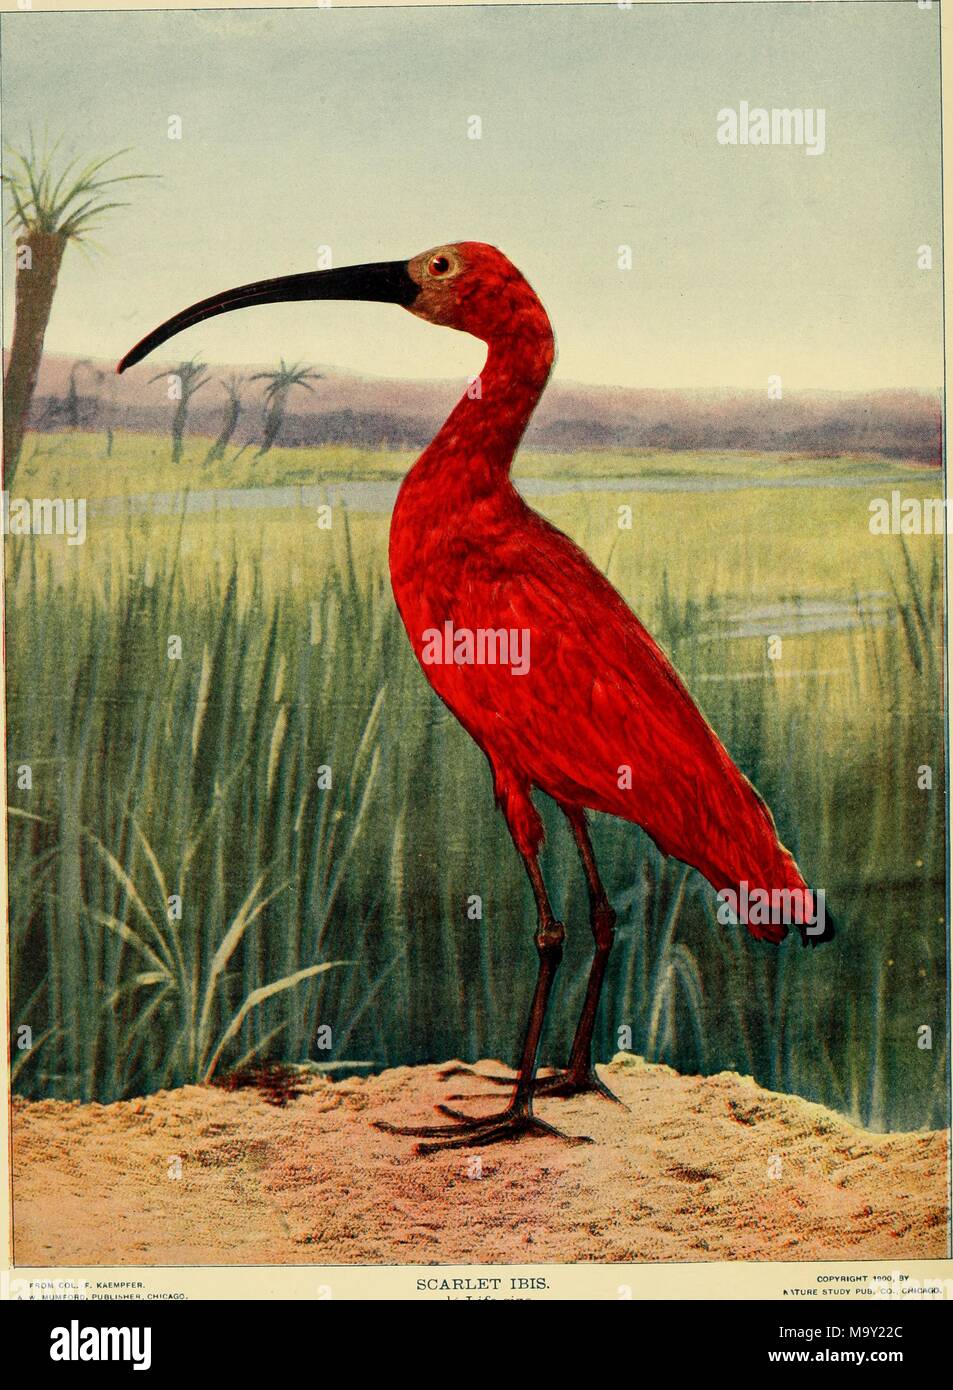 Farbe Abbildung: Darstellung einer in voller Länge, Profil anzeigen Der Scarlet ibis (Eudocimus ruber) mit roten Federn, eine lange, gebogene, schwarzem Schnabel und schwarzen Beinen, stehend auf eine Scherbe, Vordergrund, mit grünen Gras, flache, sumpfige Feuchtgebiete, ein paar Palmen und einem klaren blauen Himmel im Hintergrund, aus dem Band "Vögel und Natur" durch AW Mumford, 1900 veröffentlicht. Mit freundlicher Genehmigung Internet Archive. () Stockfoto